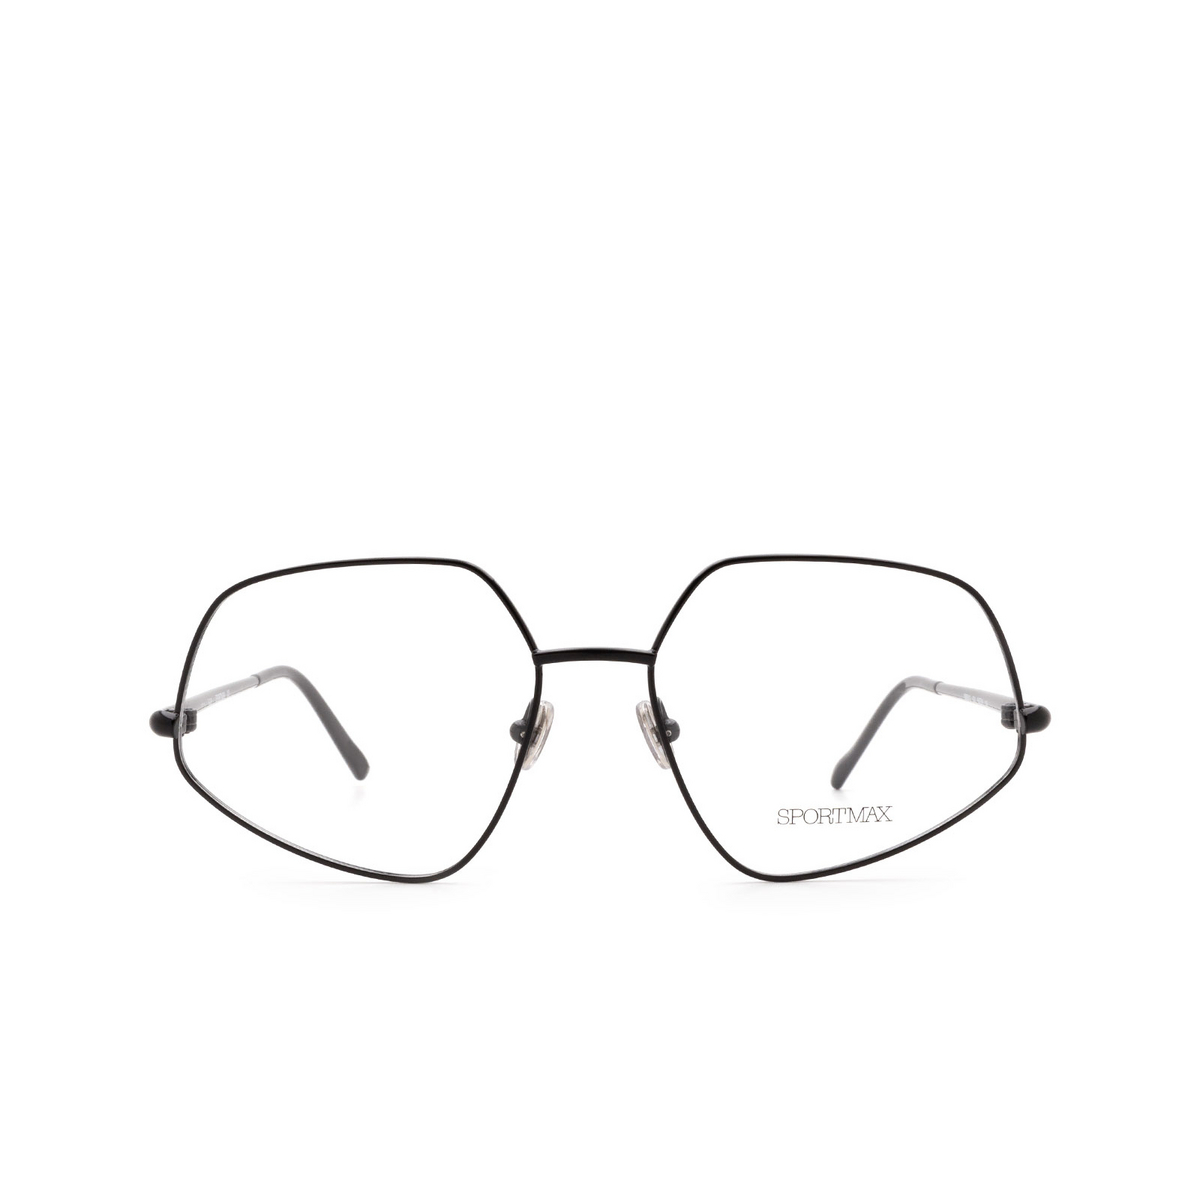 Sportmax® Square Eyeglasses: SM5010 color Black 001 - front view.